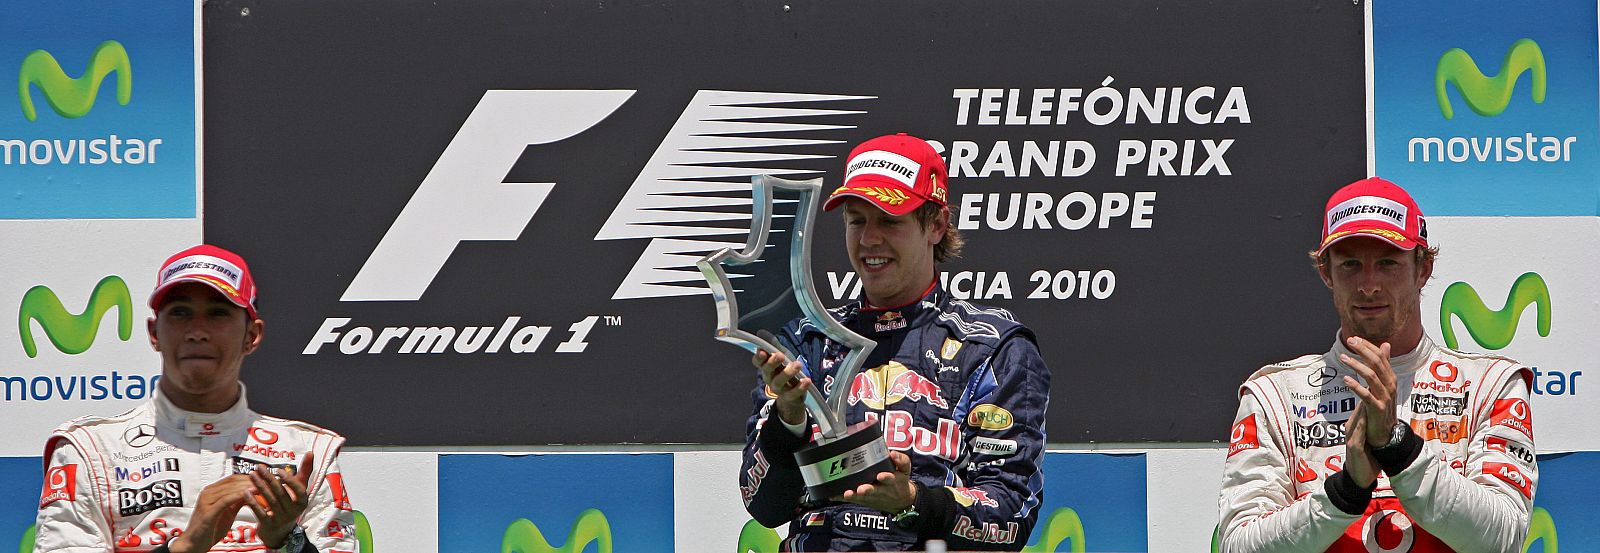 Lewis Hamilton, Sebastian Vettel y Jenson Button, en lo alto del podio del GP de Europa disputado en Valencia.